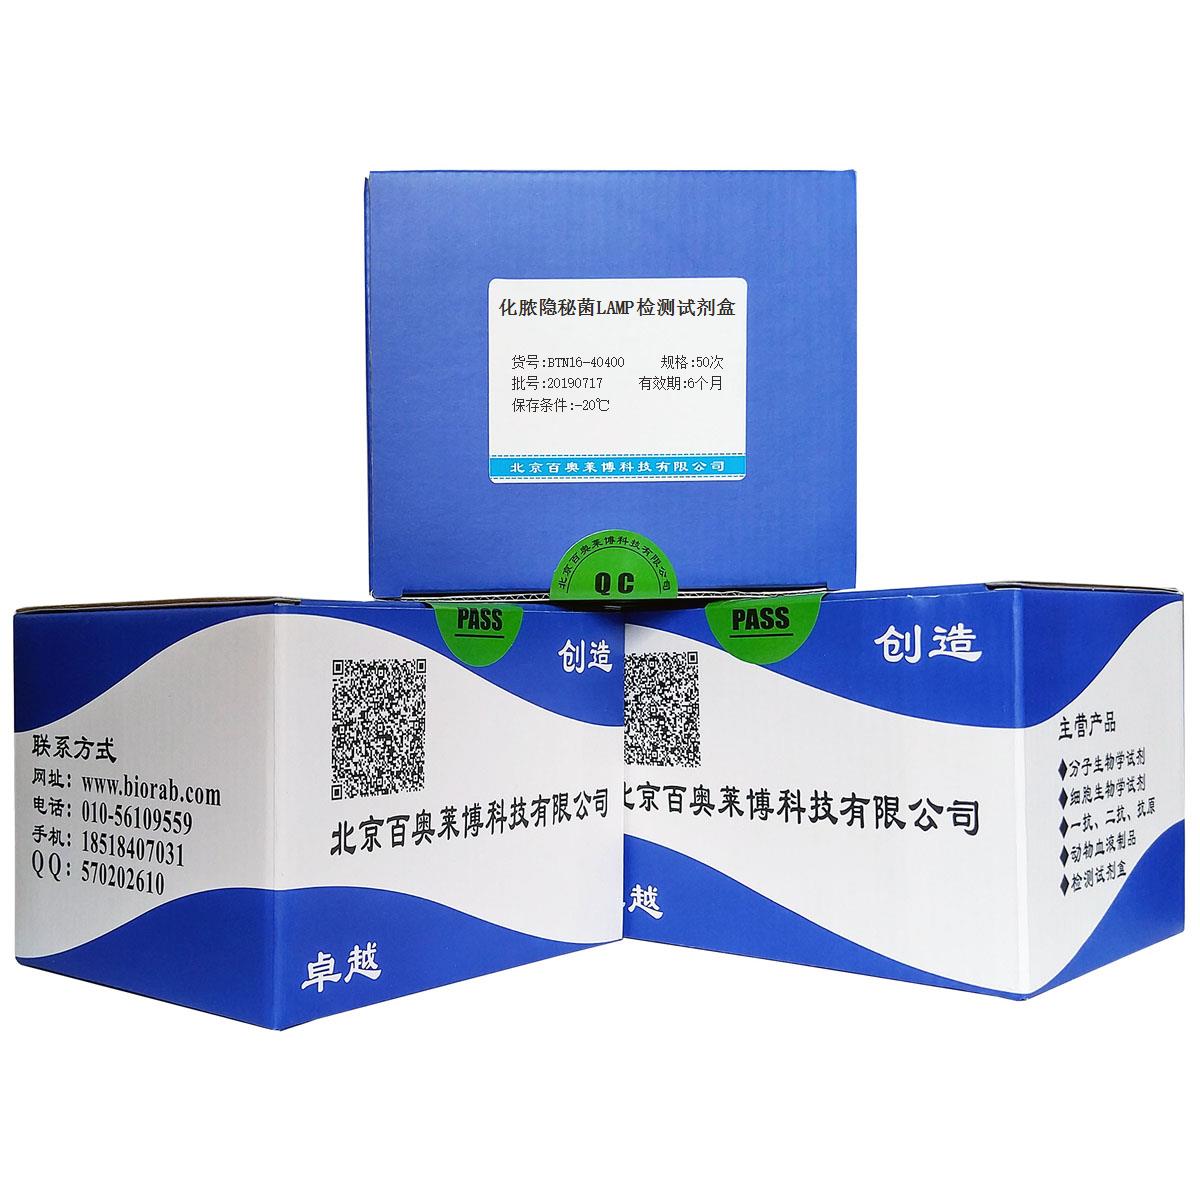 化脓隐秘菌LAMP检测试剂盒北京价格